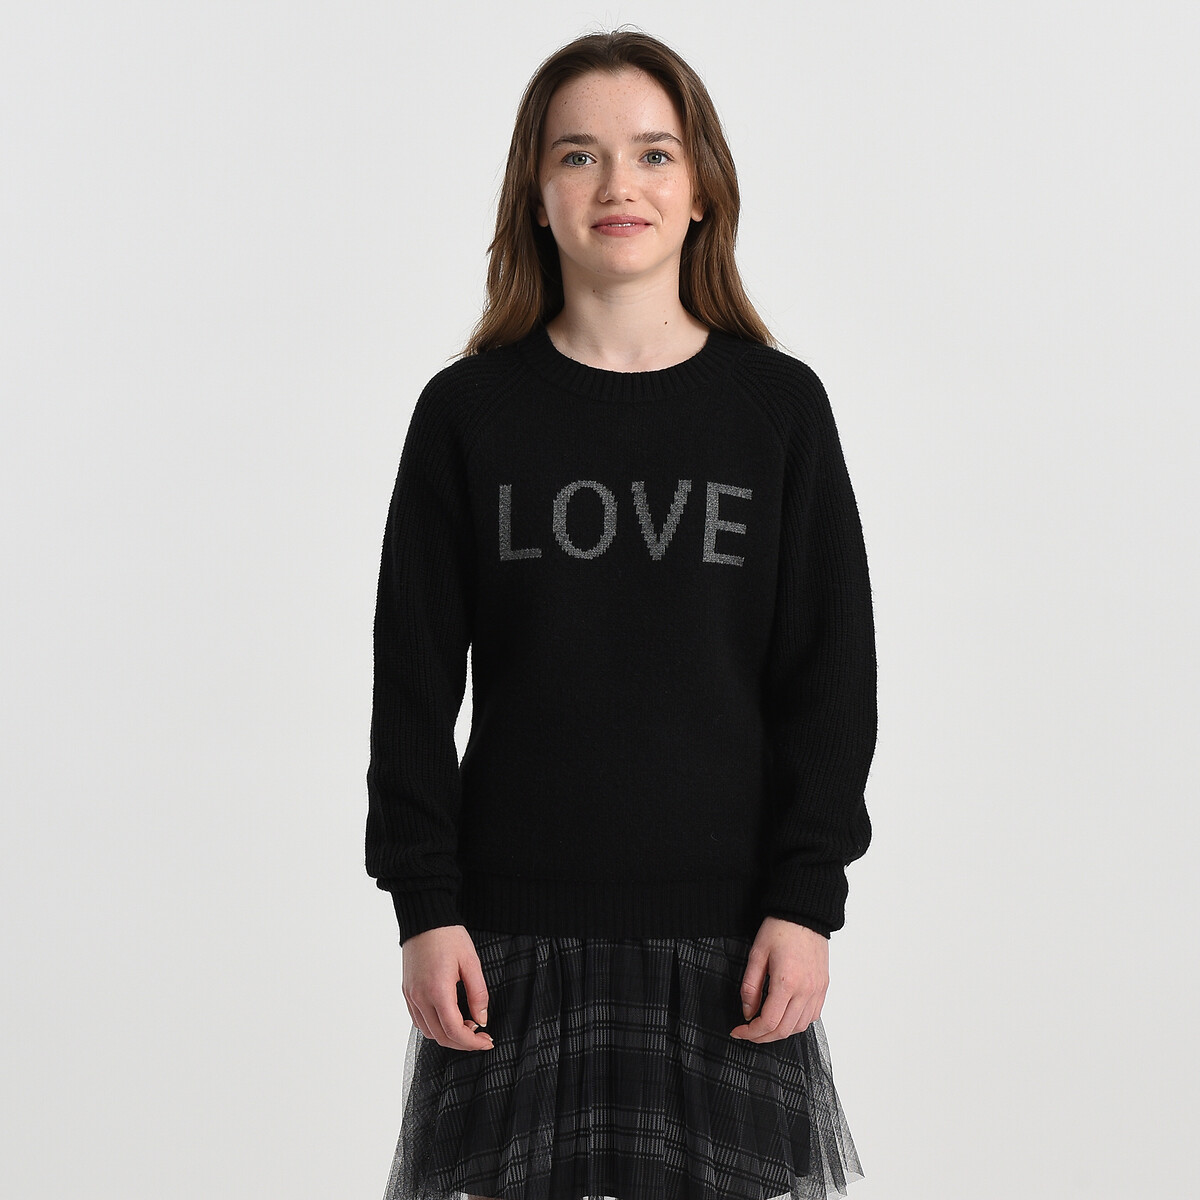 Пуловер Жаккардовый с круглым вырезом 16 лет - 162 см черный